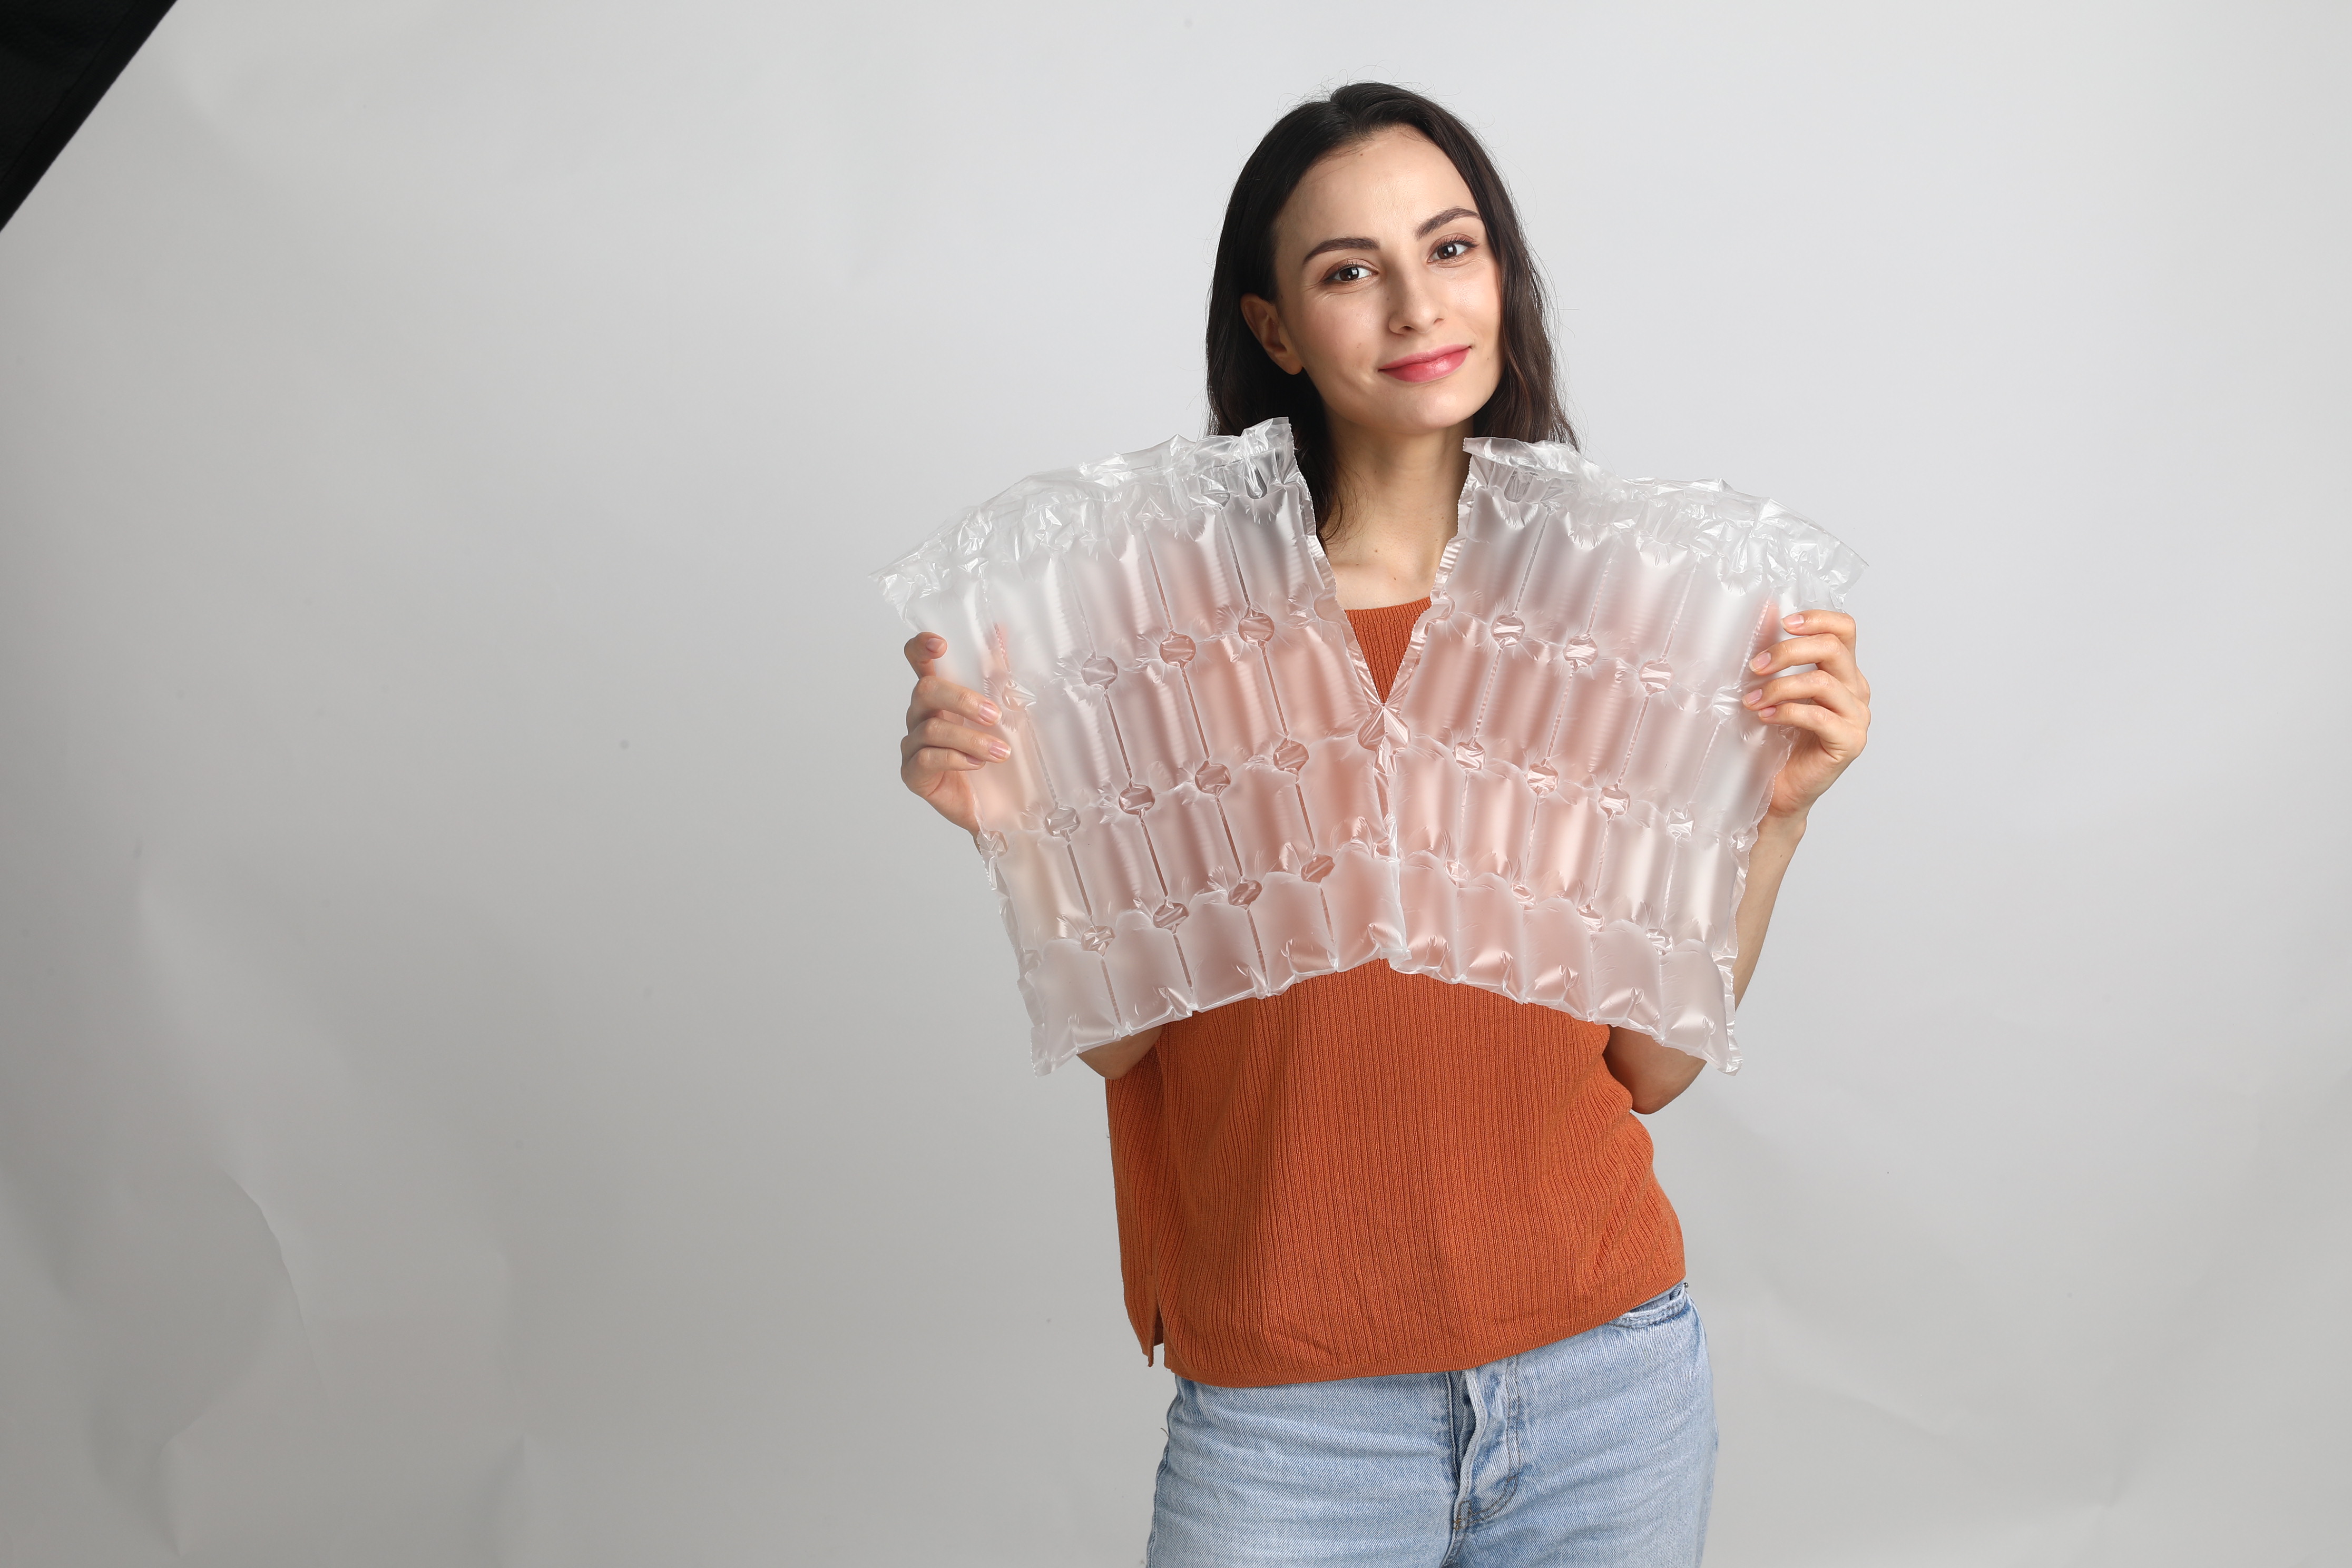 Plástico de burbujas de aire duradero de burbujas grandes populares